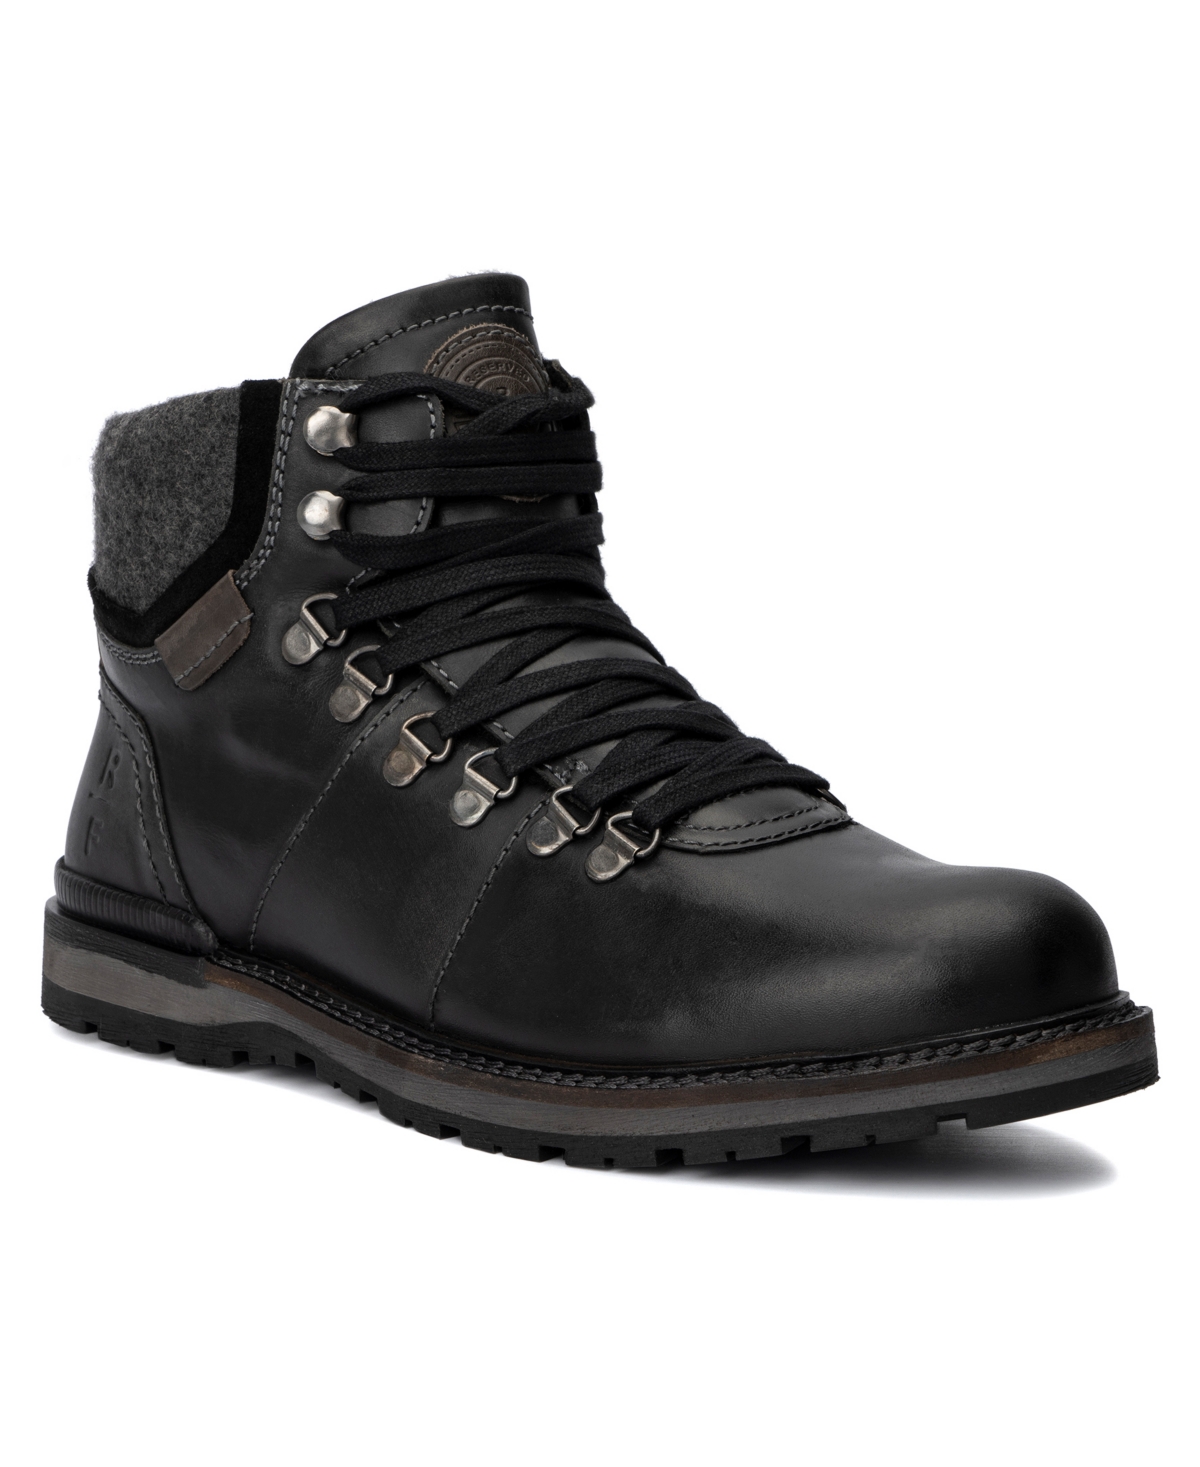 Men's Gaspar Boots - Black